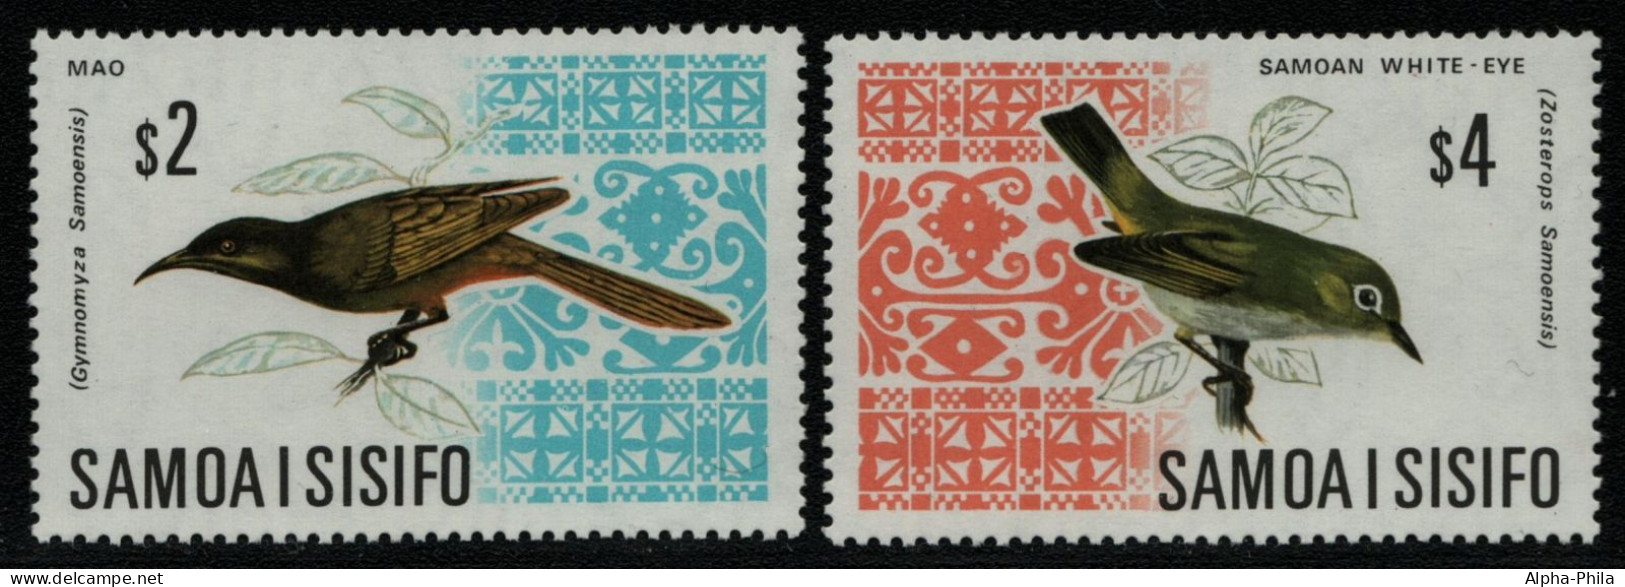 Samoa 1969 - Mi-Nr. 199-200 ** - MNH - Vögel / Birds (II) - American Samoa